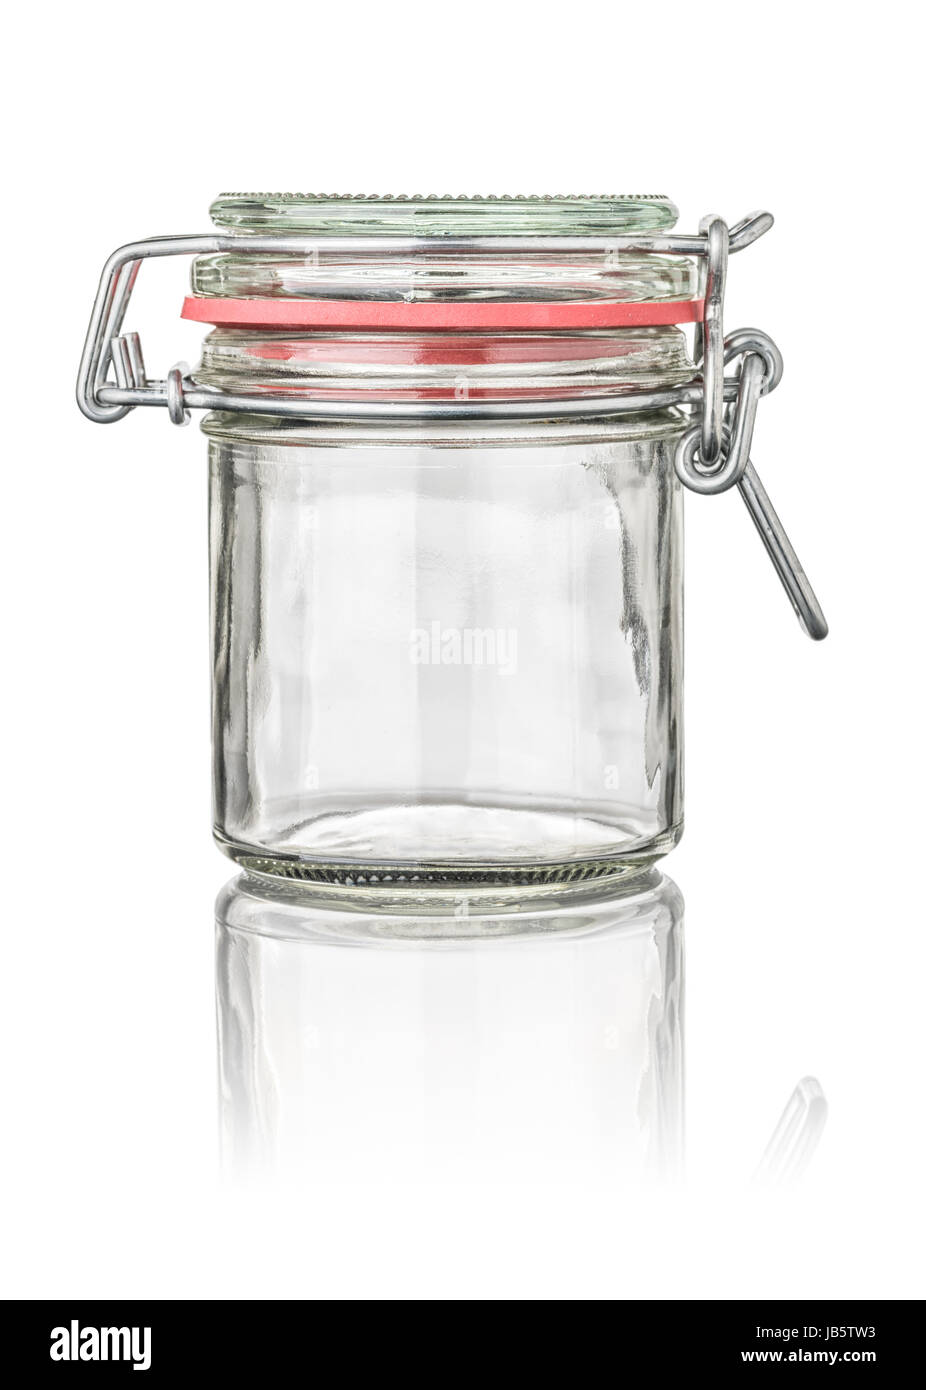 freigestelltes Einmachglas mit Drahtbügelverschluss Stock Photo